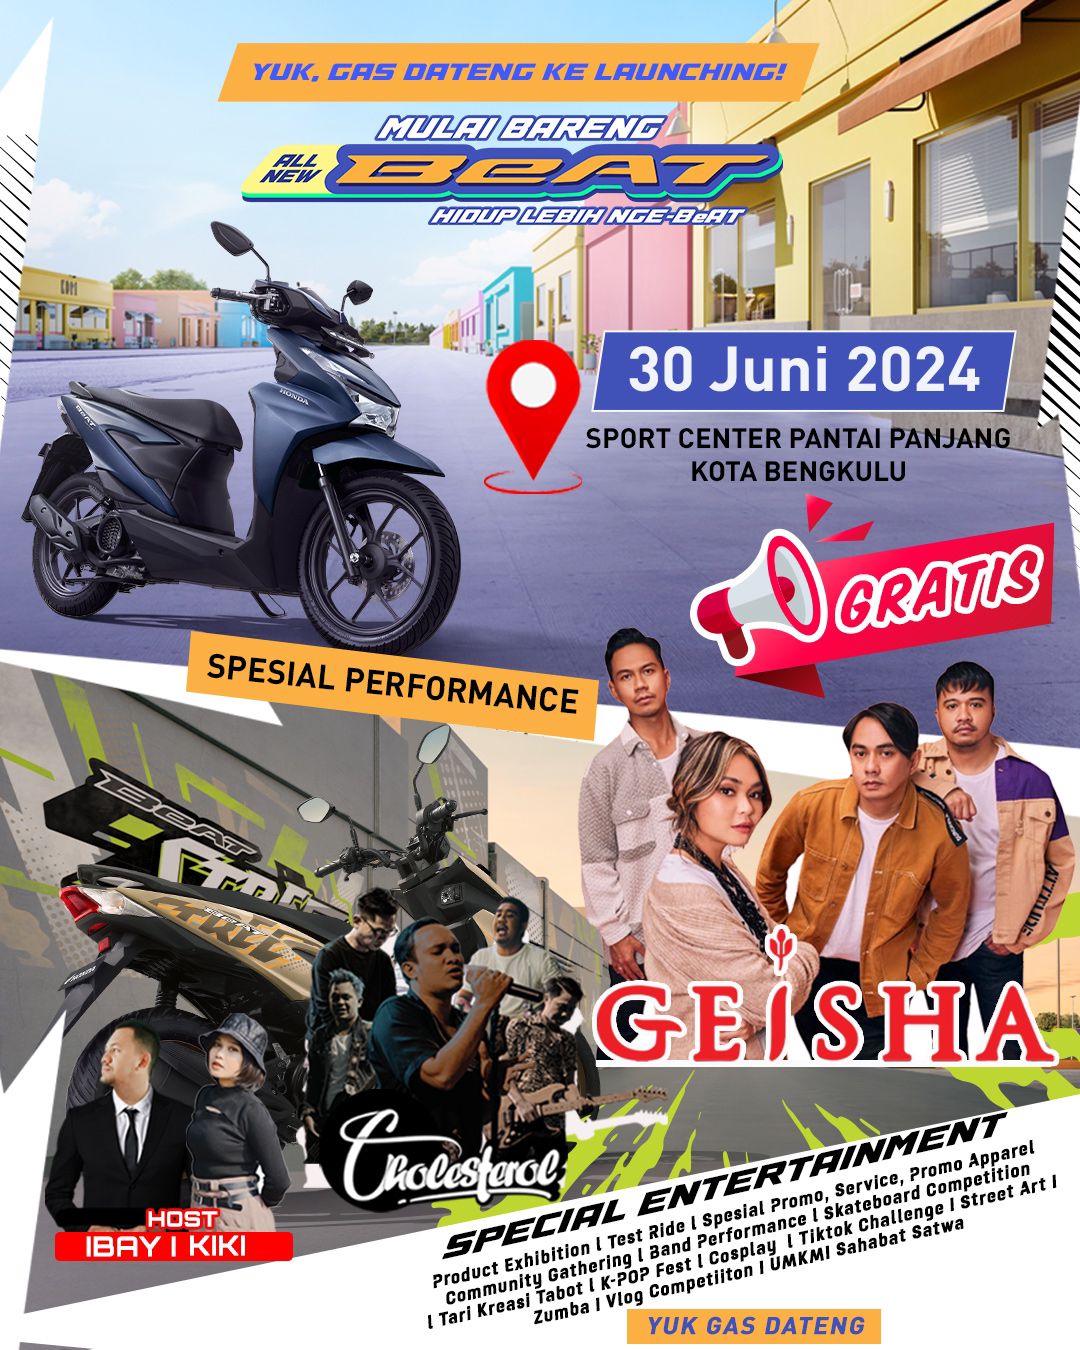 Nonton Geisha Gratis di Peluncuran All New Honda BeAT, Acara Spesial dari Astra Motor Bengkulu